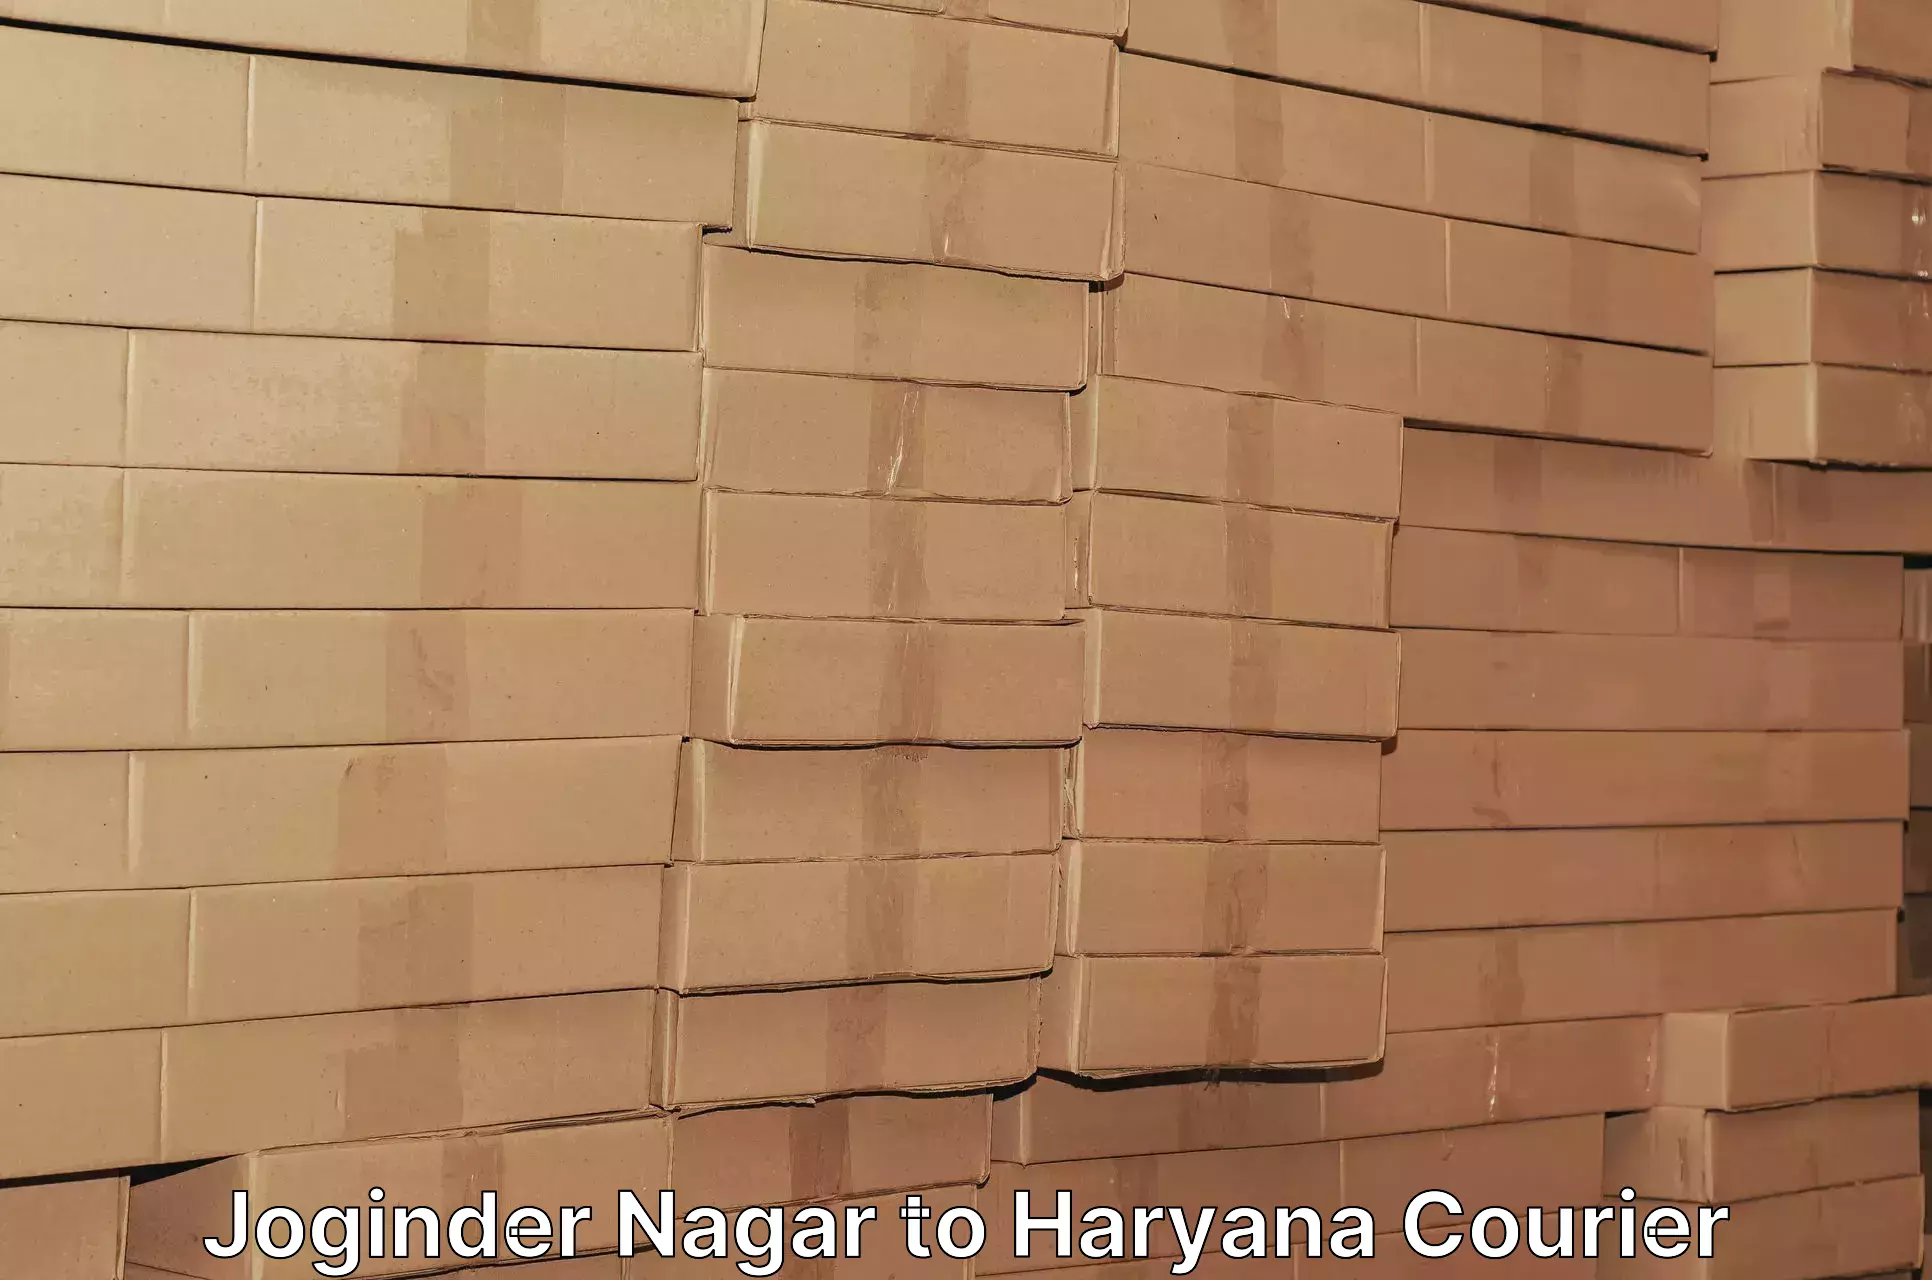 Express courier capabilities Joginder Nagar to Haryana